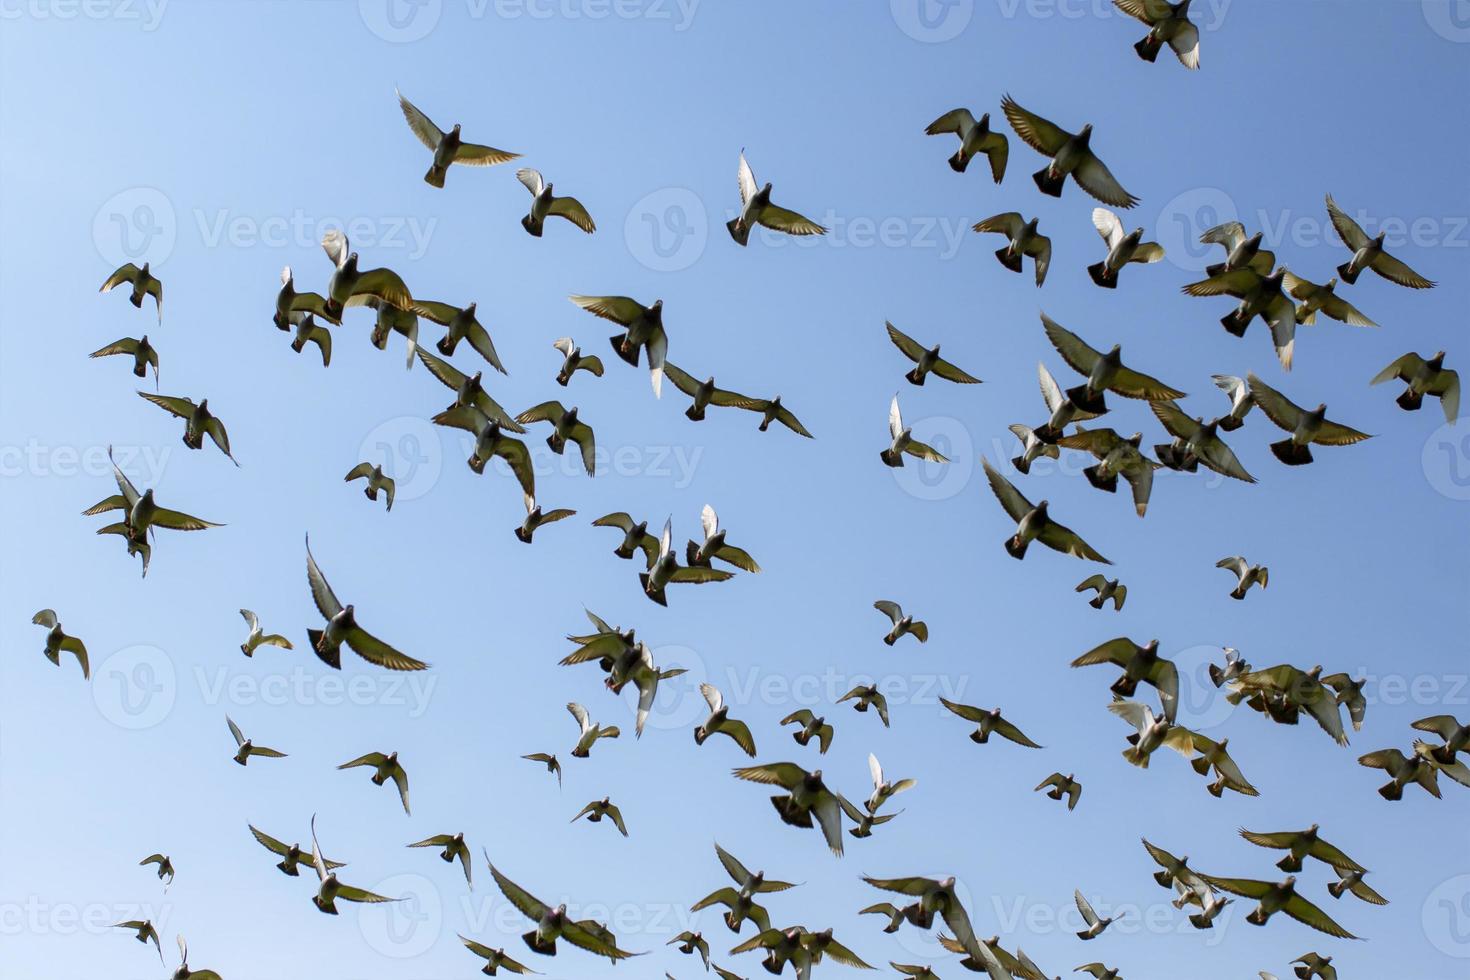 gregge di piccione da corsa di velocità uccello che vola contro il cielo blu chiaro foto